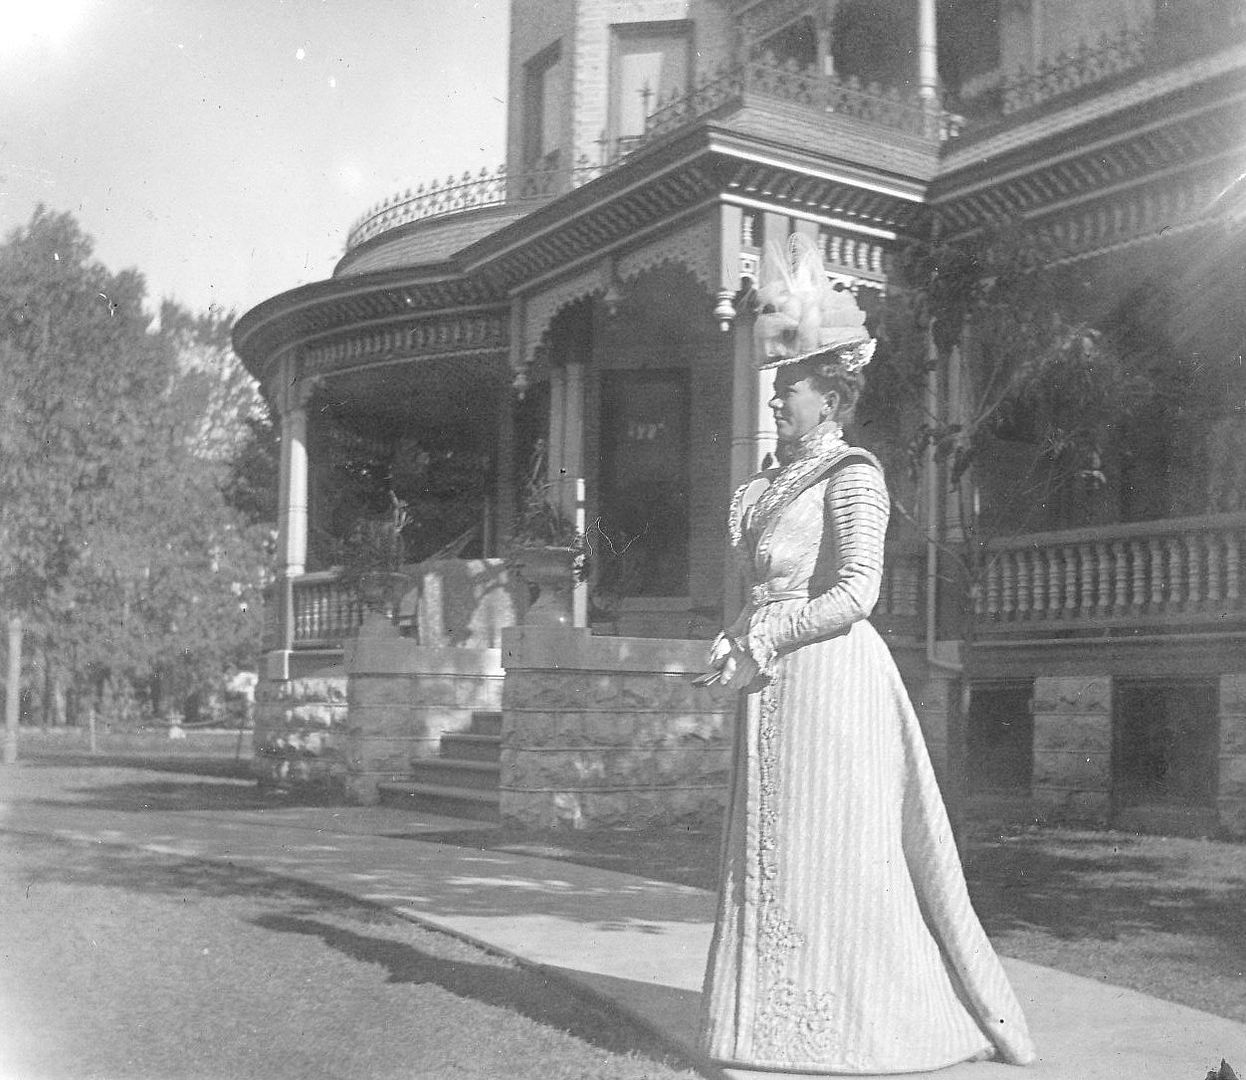 Addie in front of the Fargo Mansion.